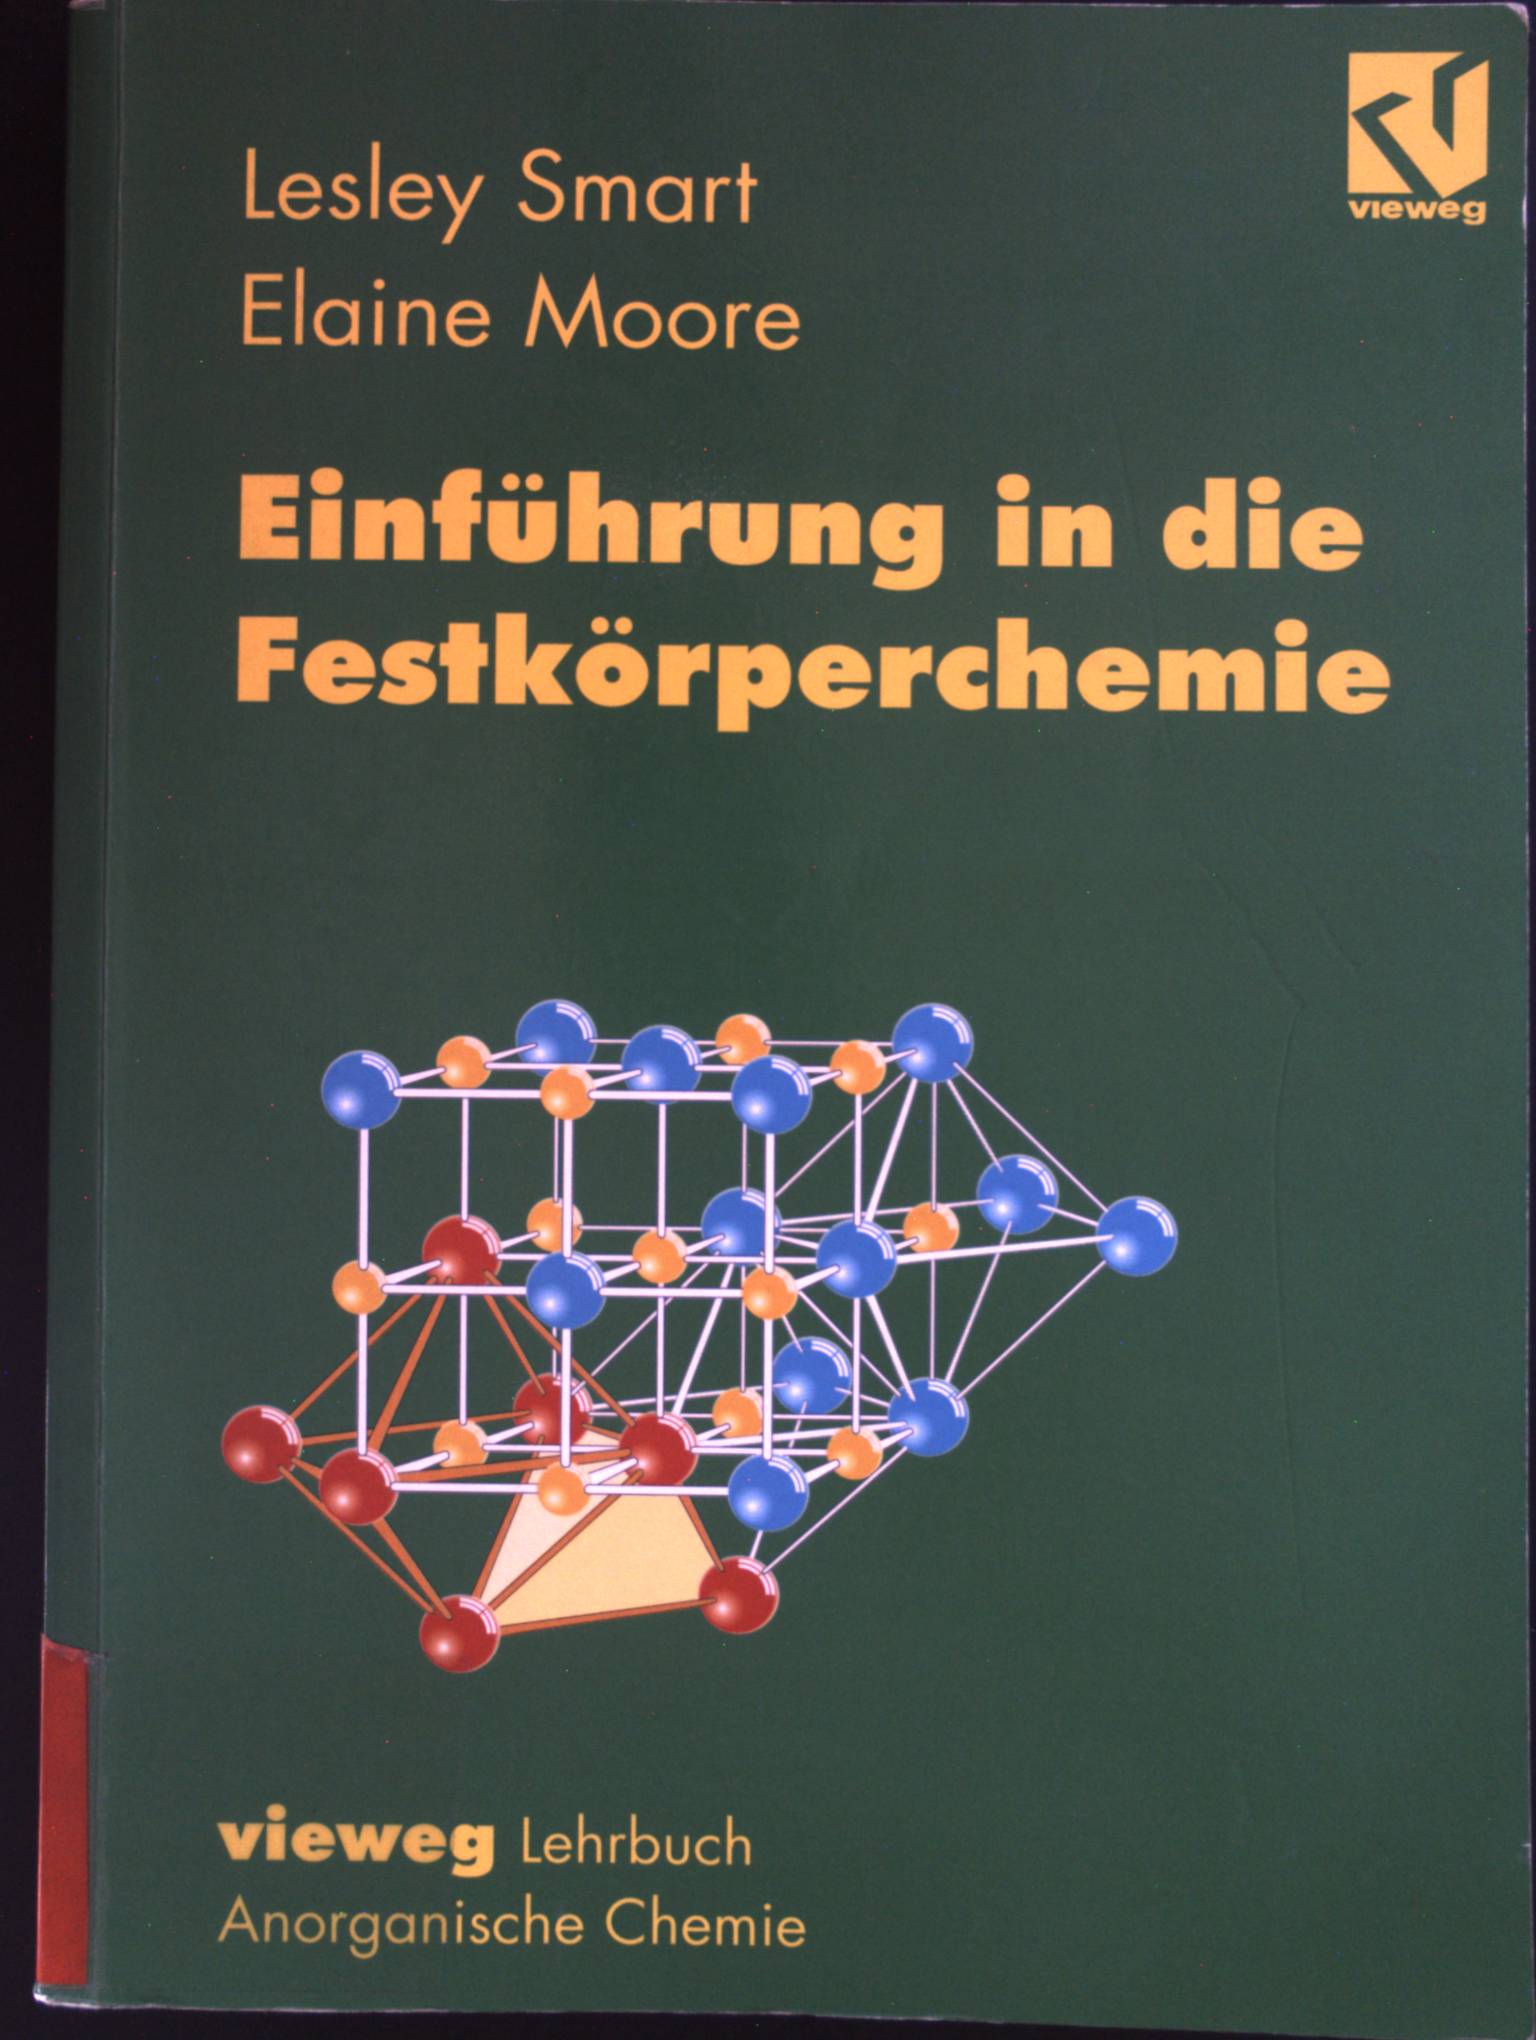 Einführung in die Festkörperchemie. Vieweg Lehrbuch anorganische Chemie. - Smart, Lesley E. und Elaine Moore